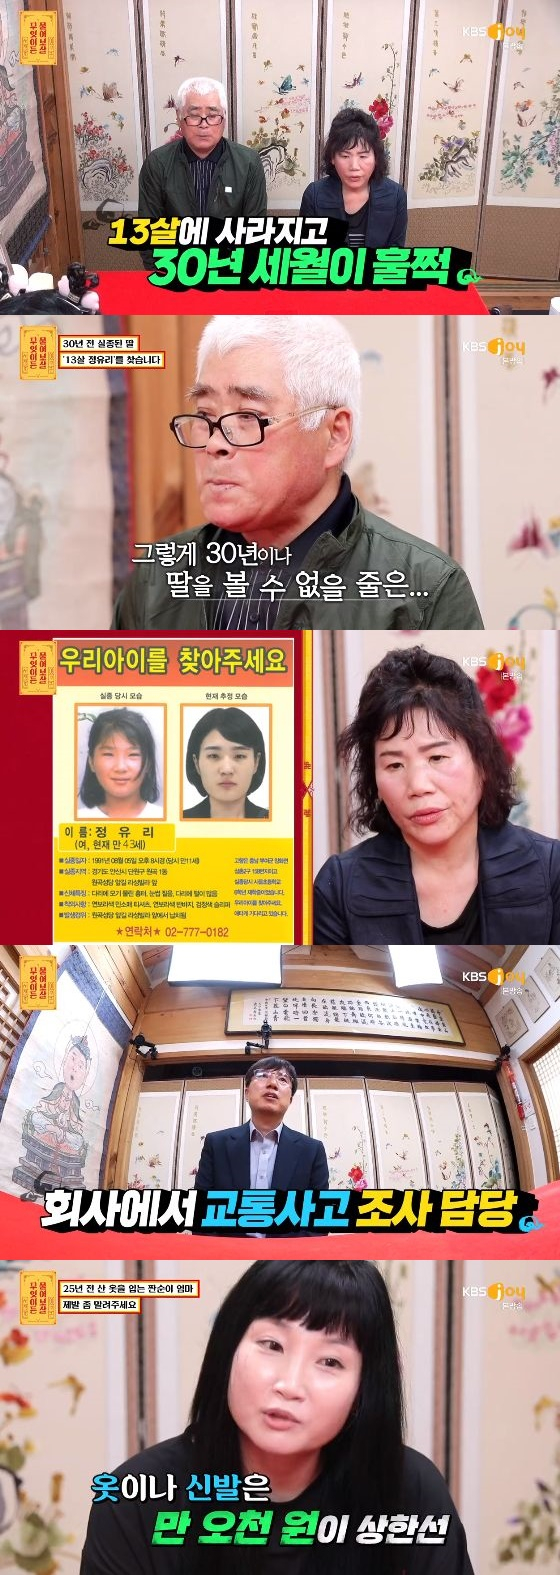 /사진= KBS JOY '무엇이든 물어보살' 방송화면 캡쳐